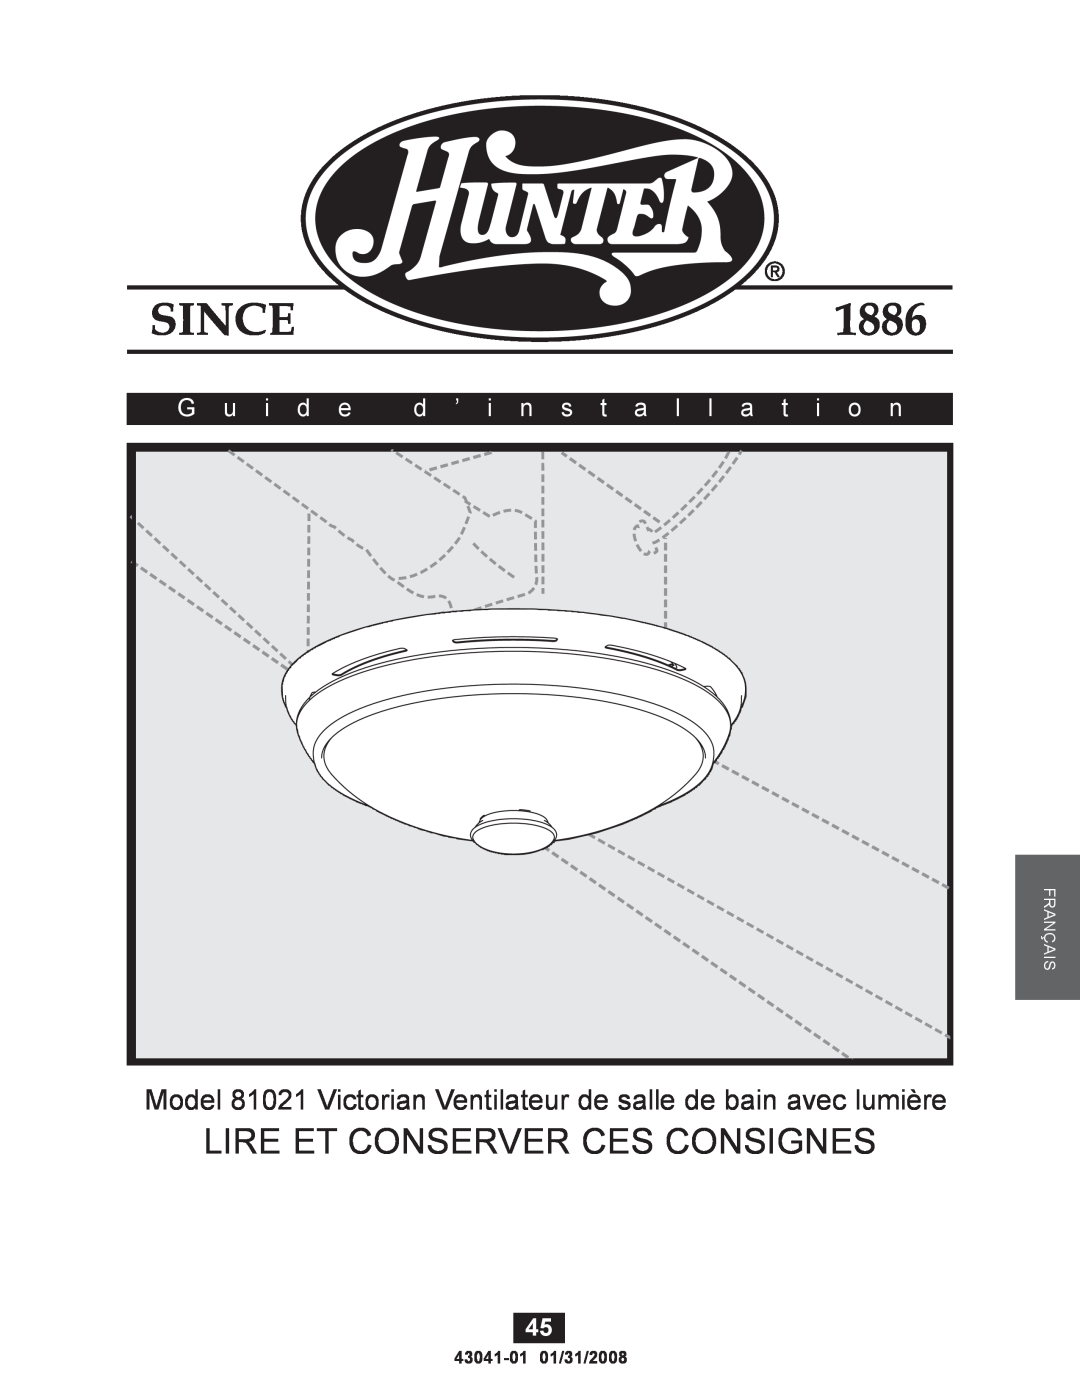 Hunter Fan 43041-01 manual Lire Et Conserver Ces Consignes, Model 81021 Victorian Ventilateur de salle de bain avec lumière 